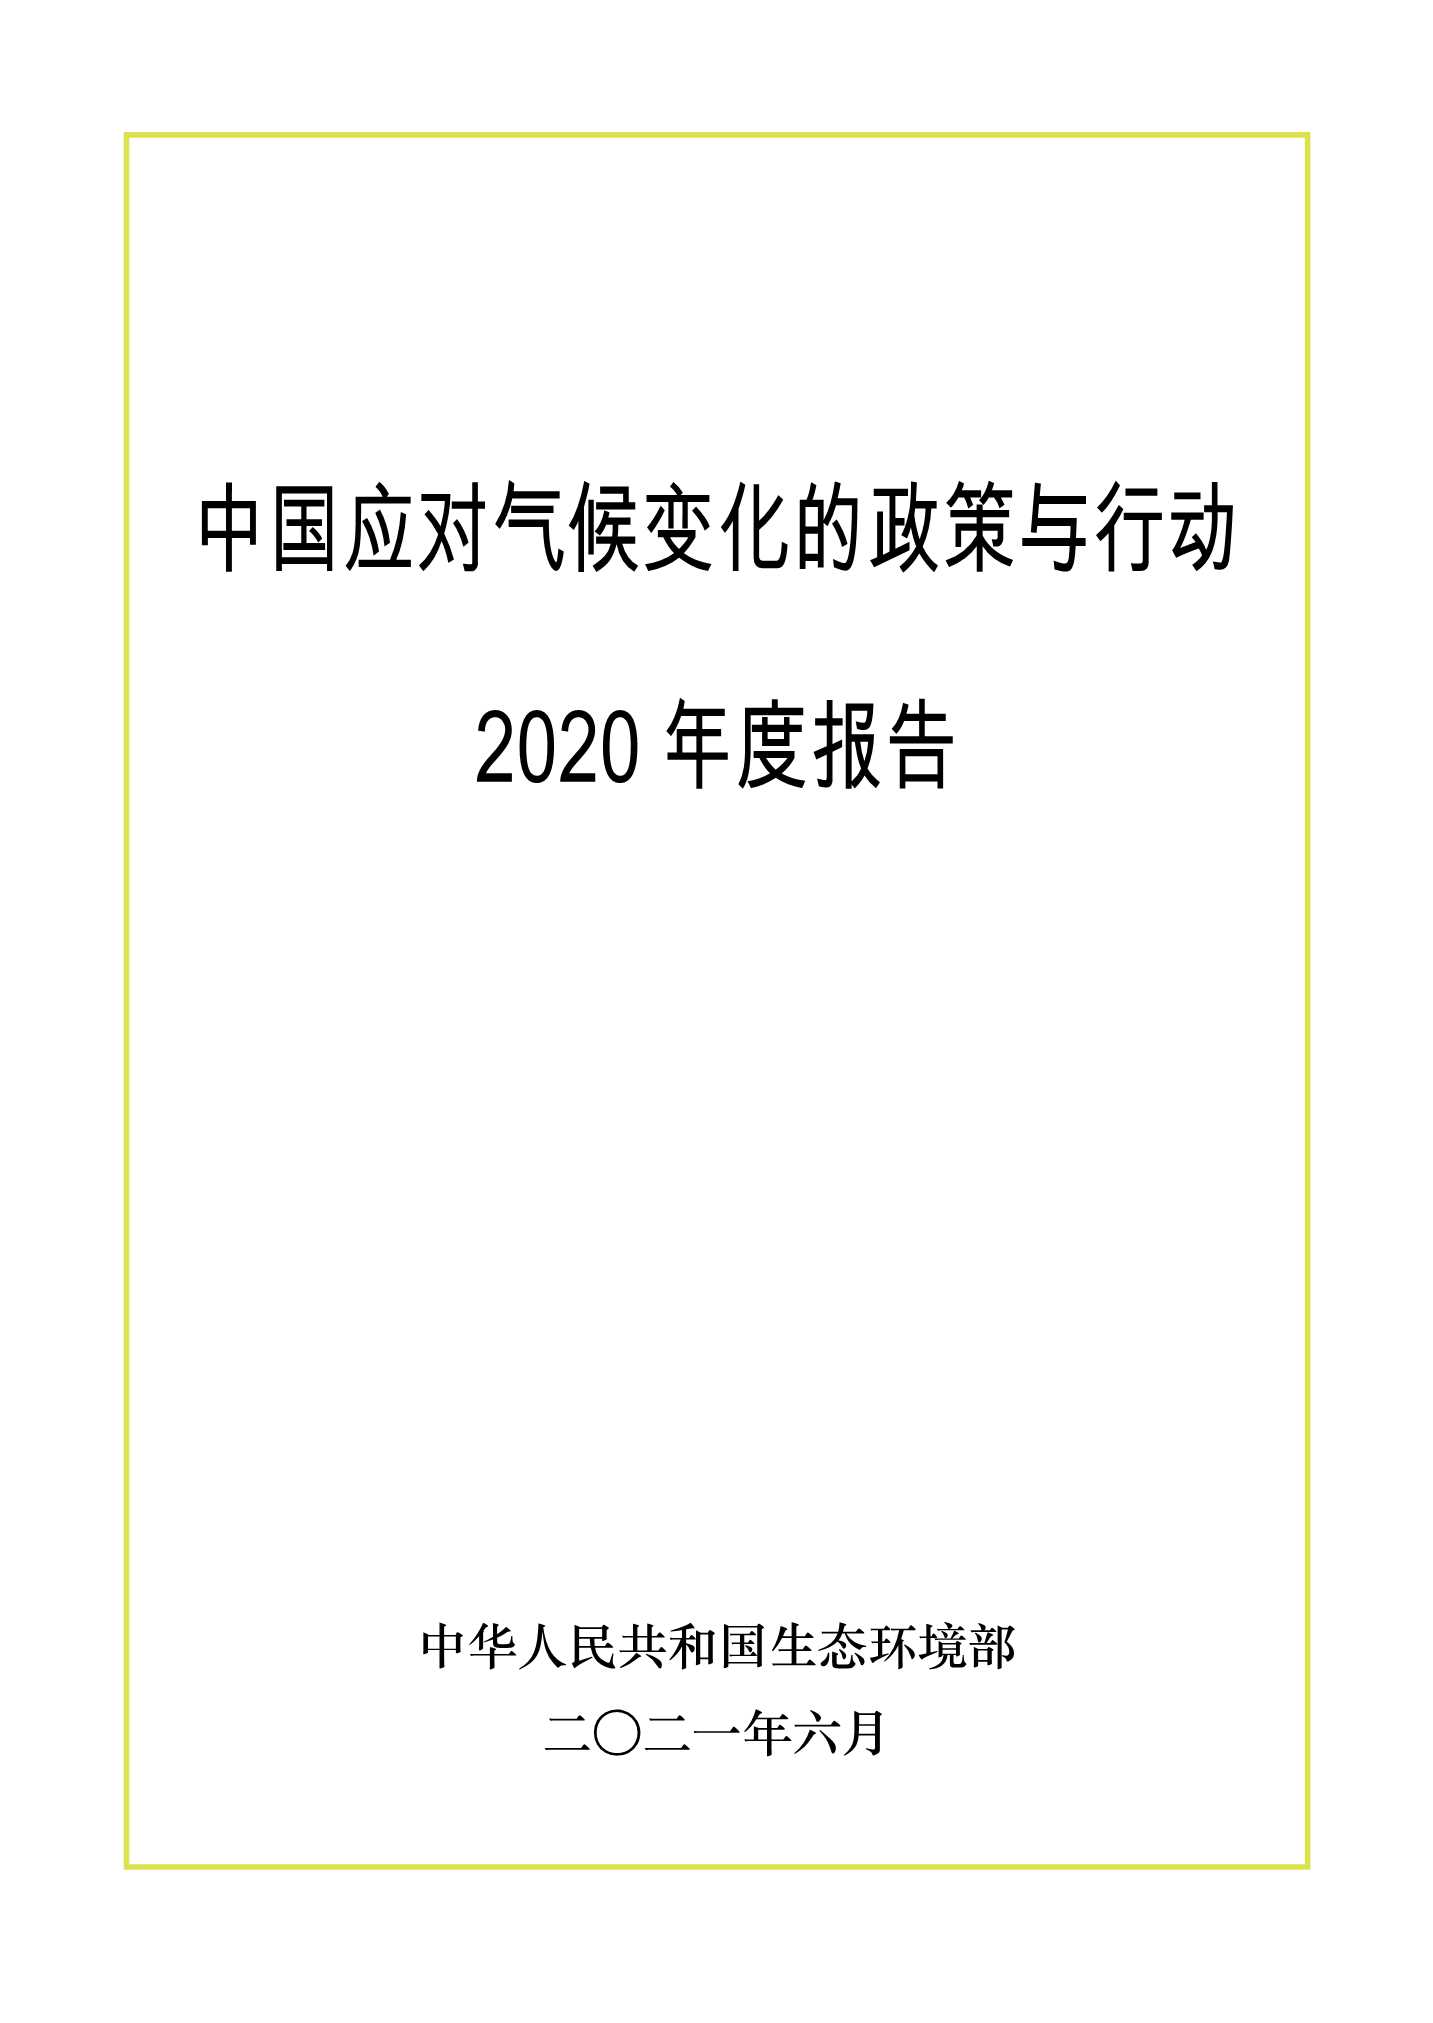 生态环境部-中国应对气候变化的政策与行动2020年度报告-2021.07-74页